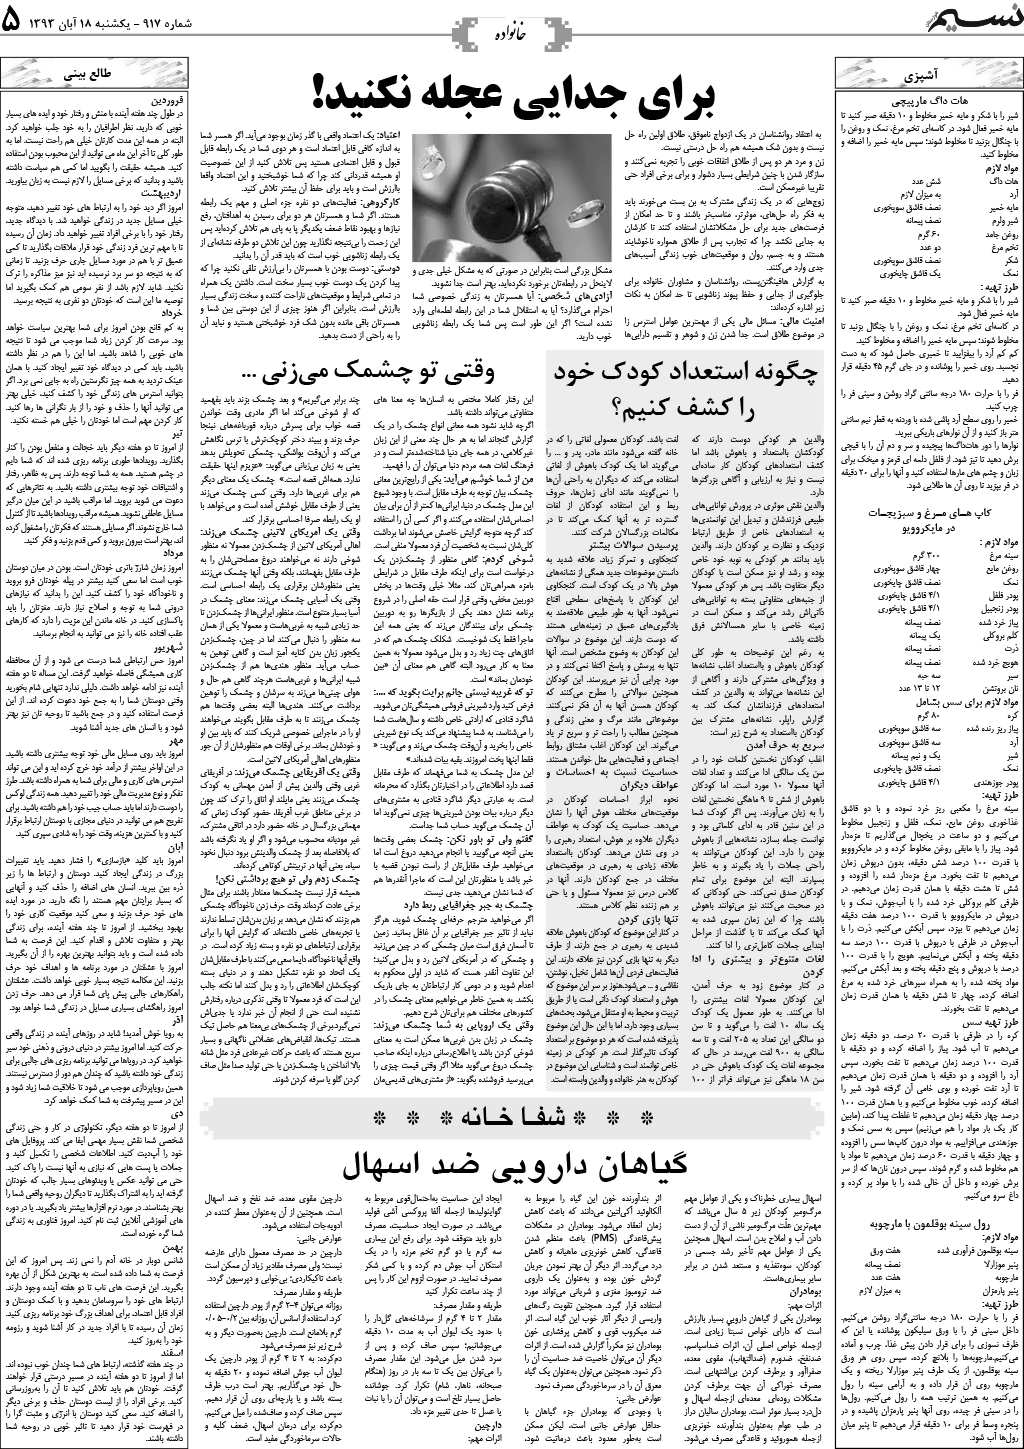 صفحه خانواده روزنامه نسیم شماره 917